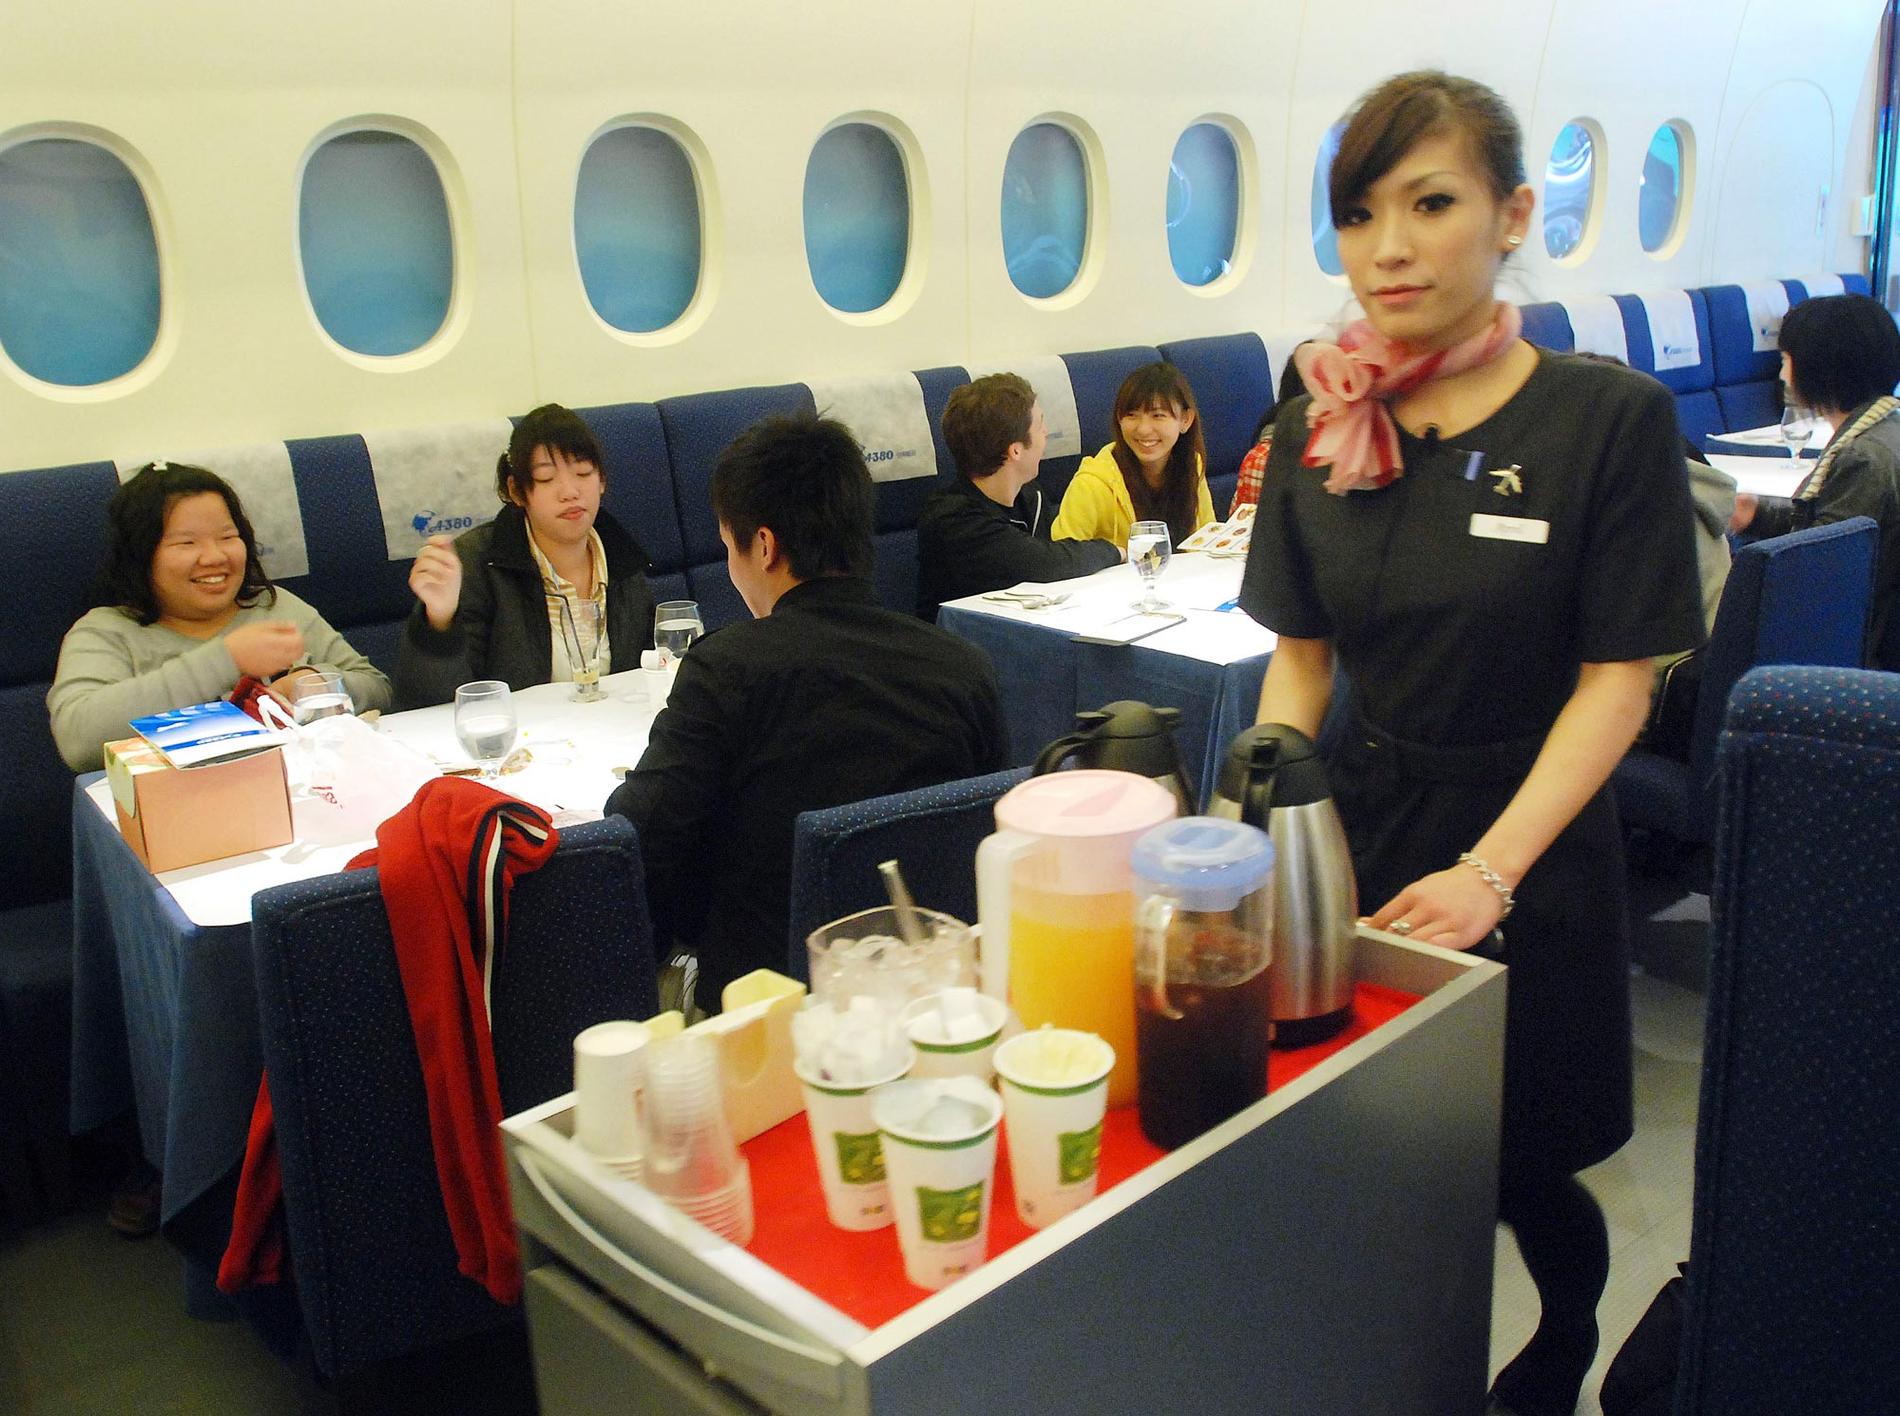 A380 KTICHEN Ligger i Taiwans huvudstad Taipei. Här hälsas du "välkommen ombord" av servitriser i flygvärdinneuniformer och inredningen liknar så långt möjligt ett flygplans – en del rätter serveras till och med på plastbricka. Av 84 platser är 20 i ”första klass”. Läs artikel om A380 Inflight kitchen